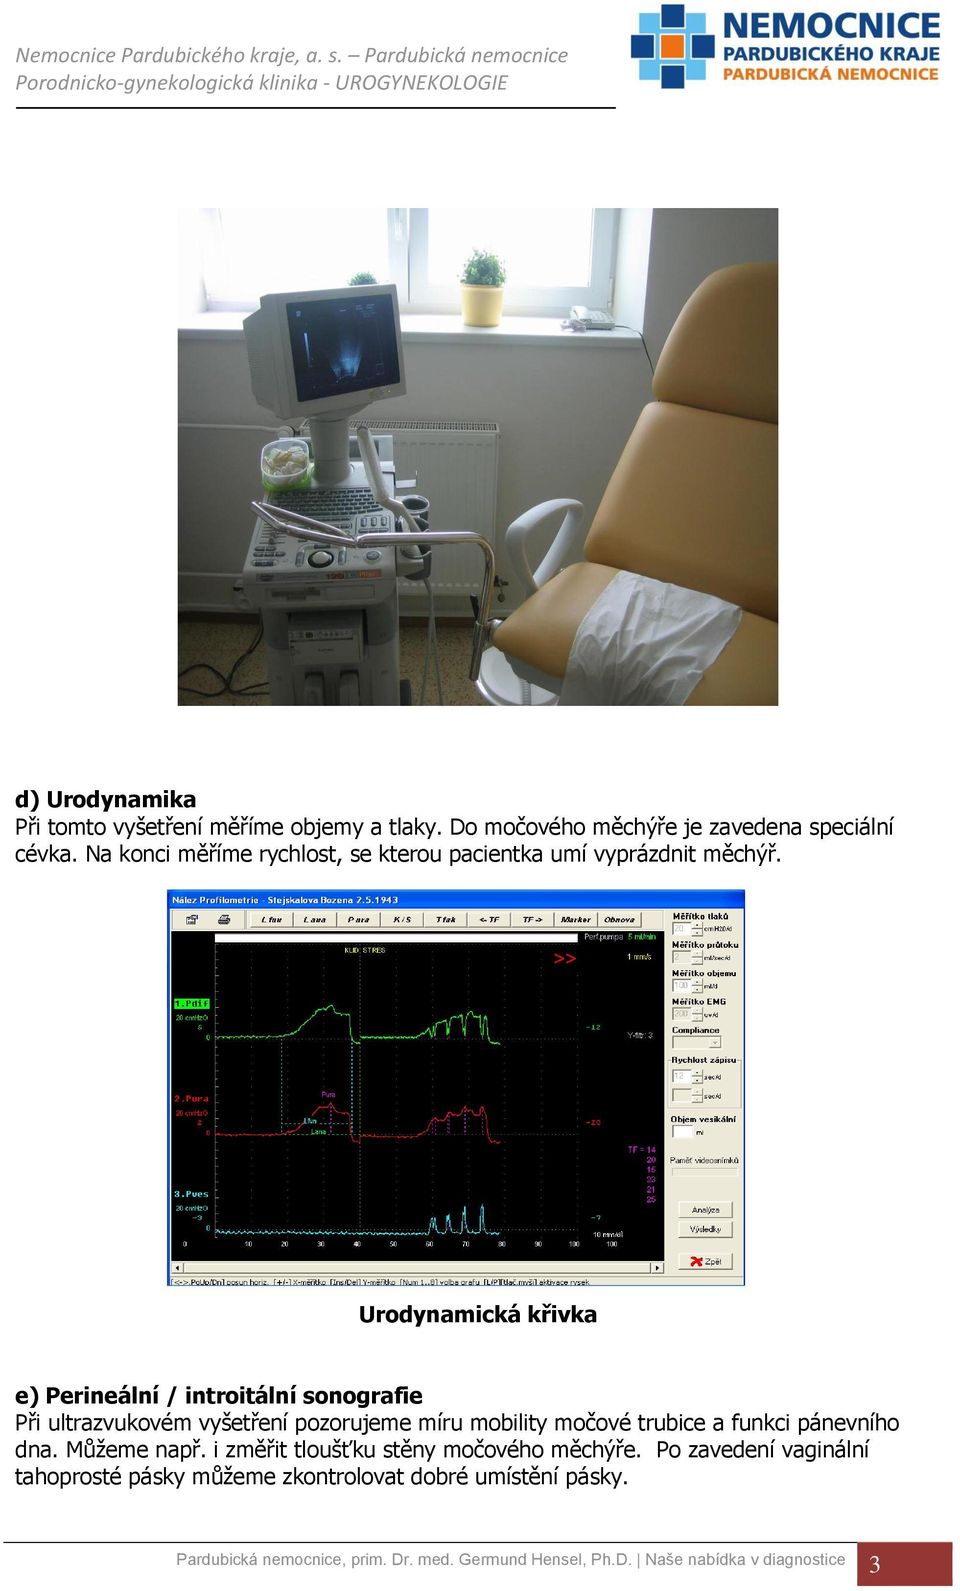 Urodynamická křivka e) Perineální / introitální sonografie Při ultrazvukovém vyšetření pozorujeme míru mobility močové trubice a funkci